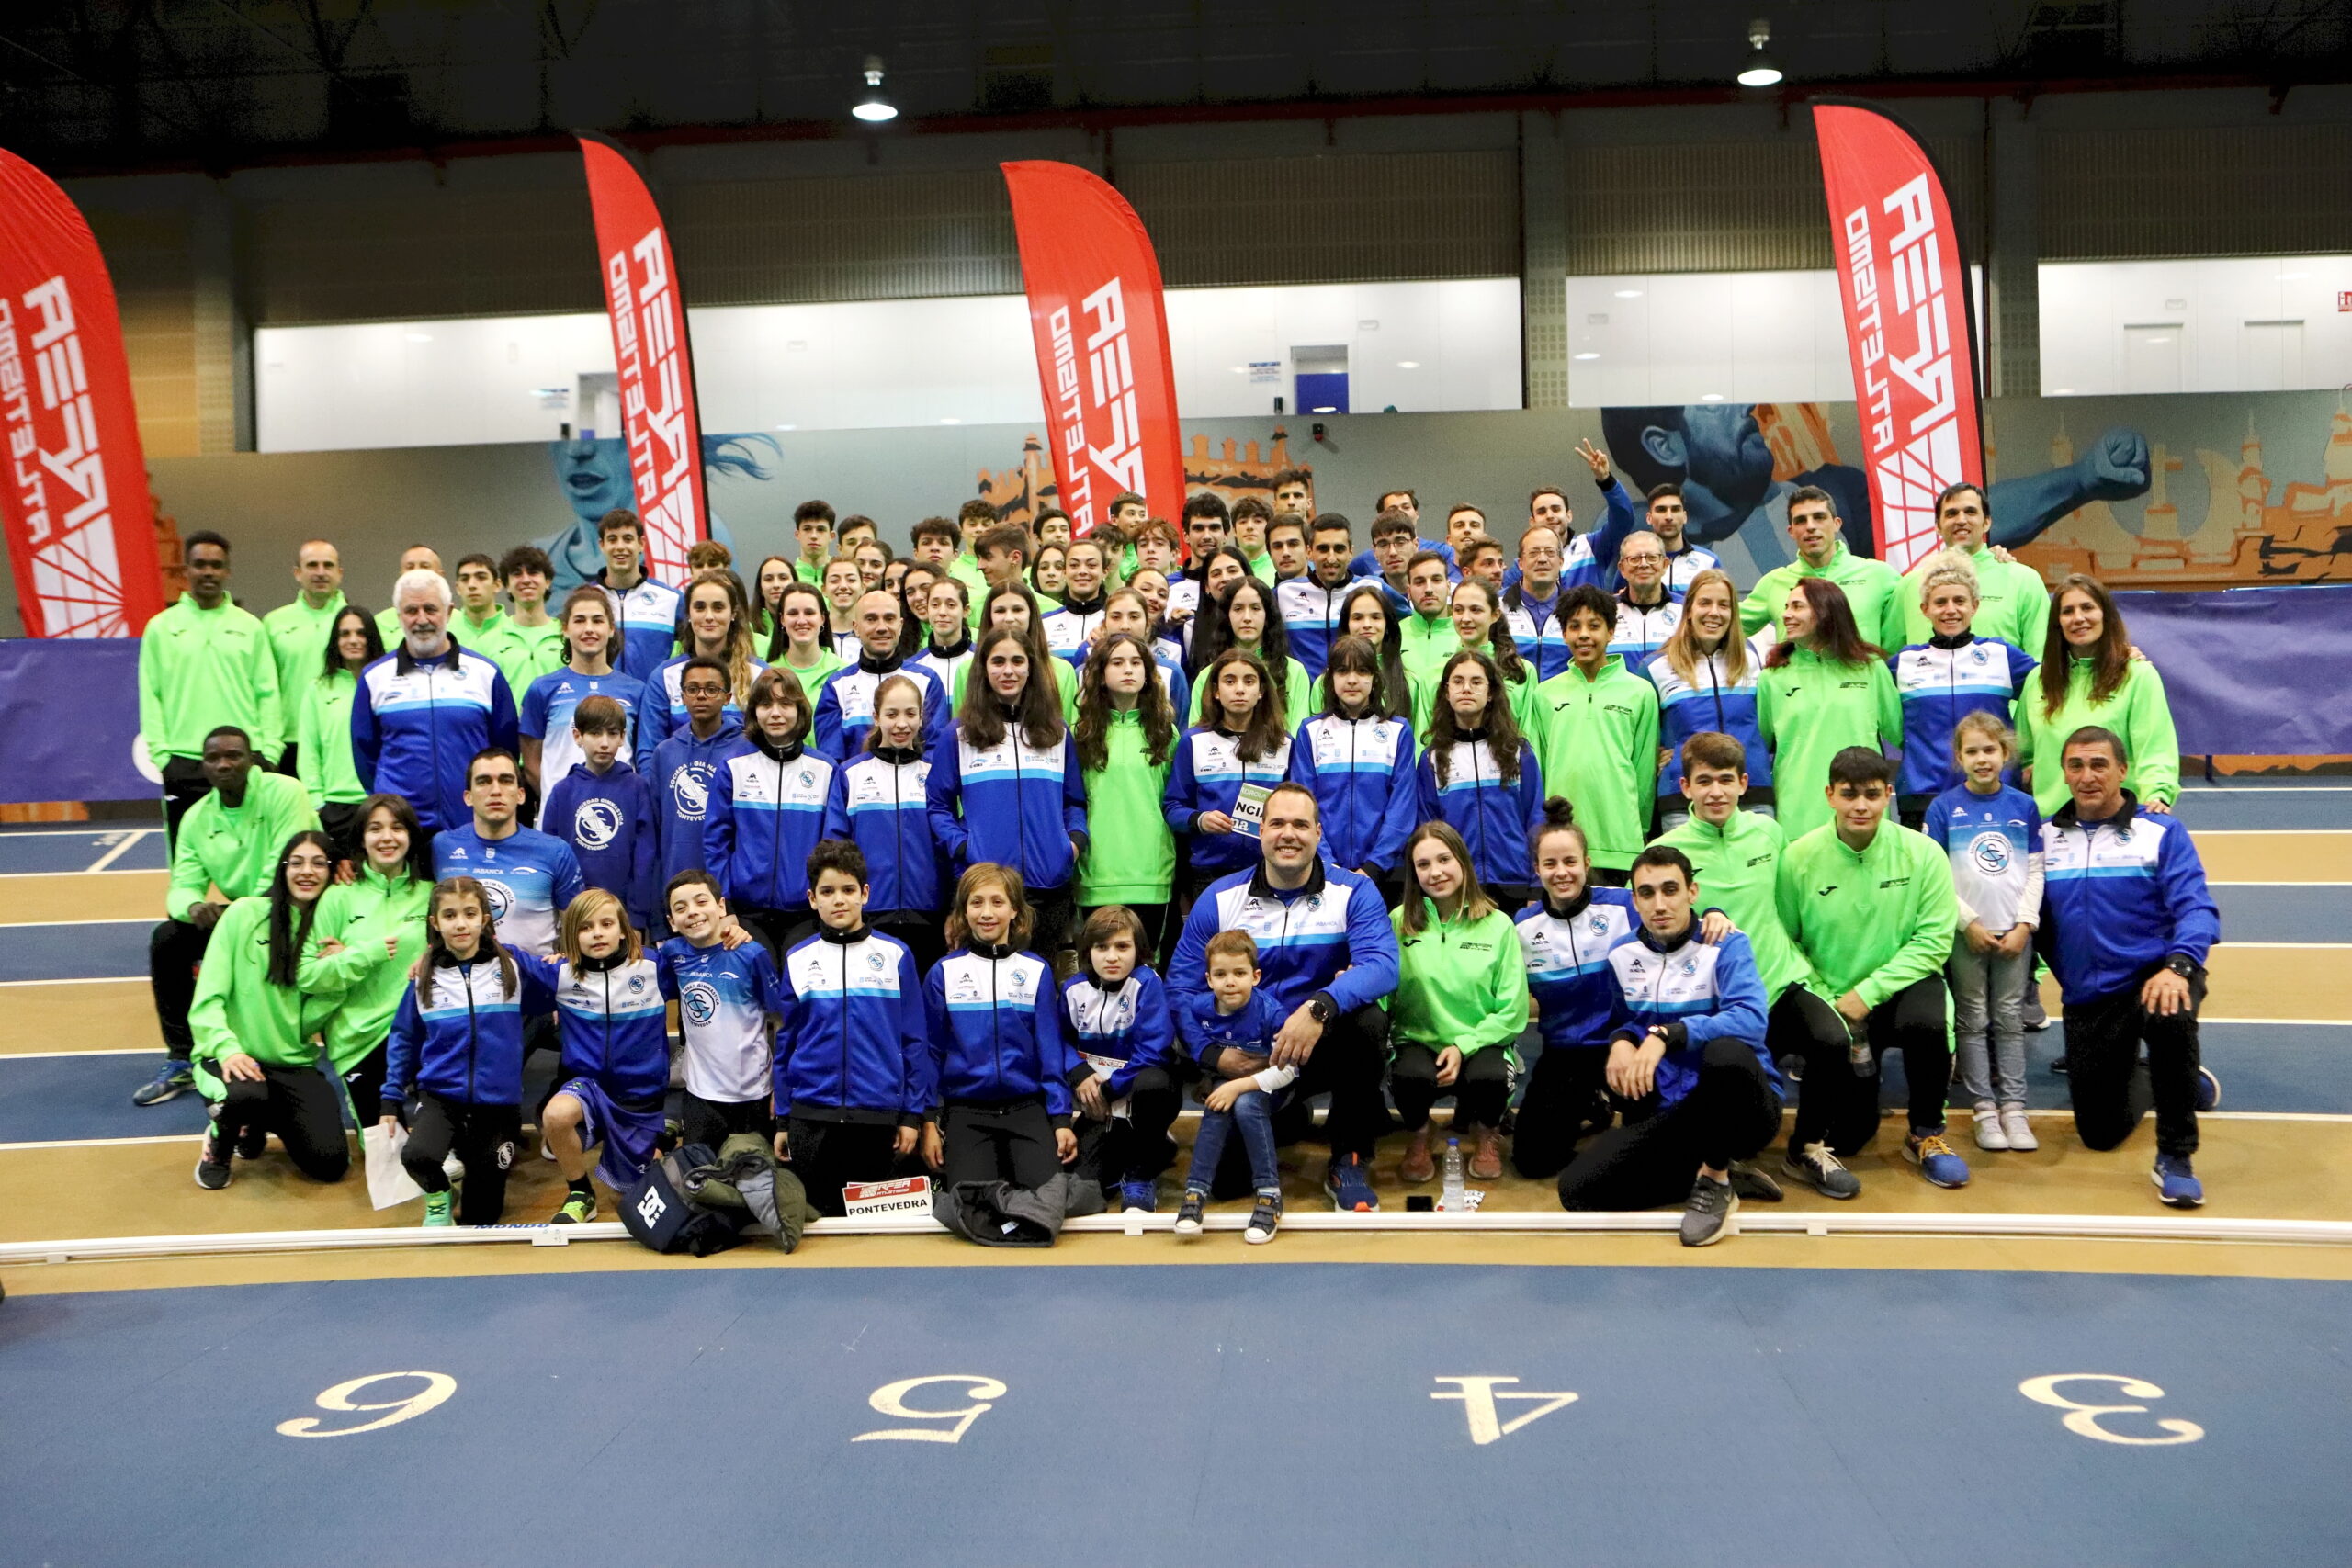 La Sociedad Gimnástica de Pontevedra ganó la Copa Gallega de Clubs de pista cubierta en categoría masculina y en femenina.